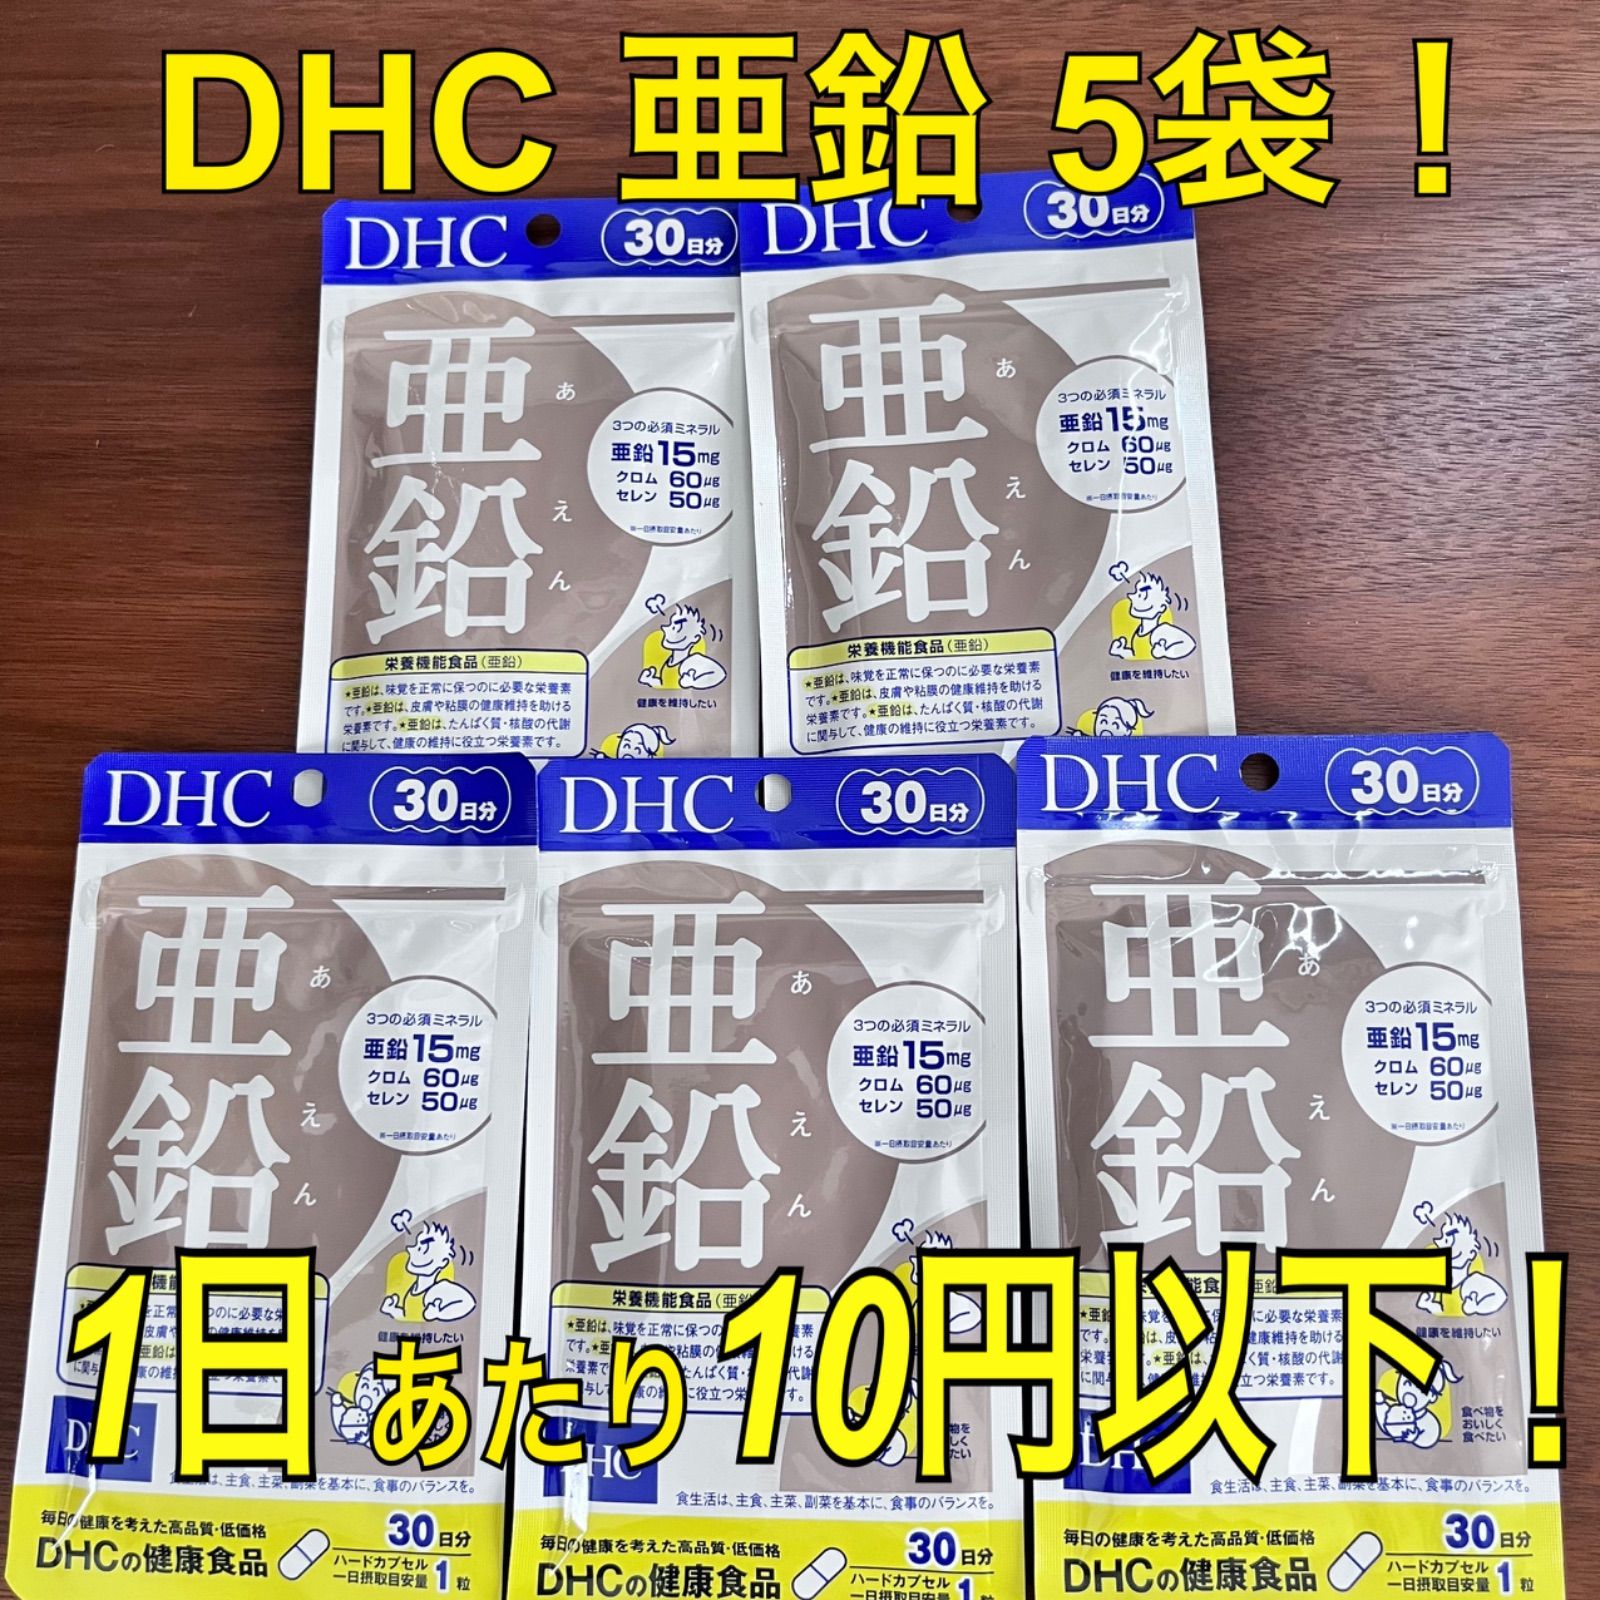    DHC 亜鉛 30日分  まとめ買い 味覚 偏食 ダイエット中 男性パワー 栄養機能性食品